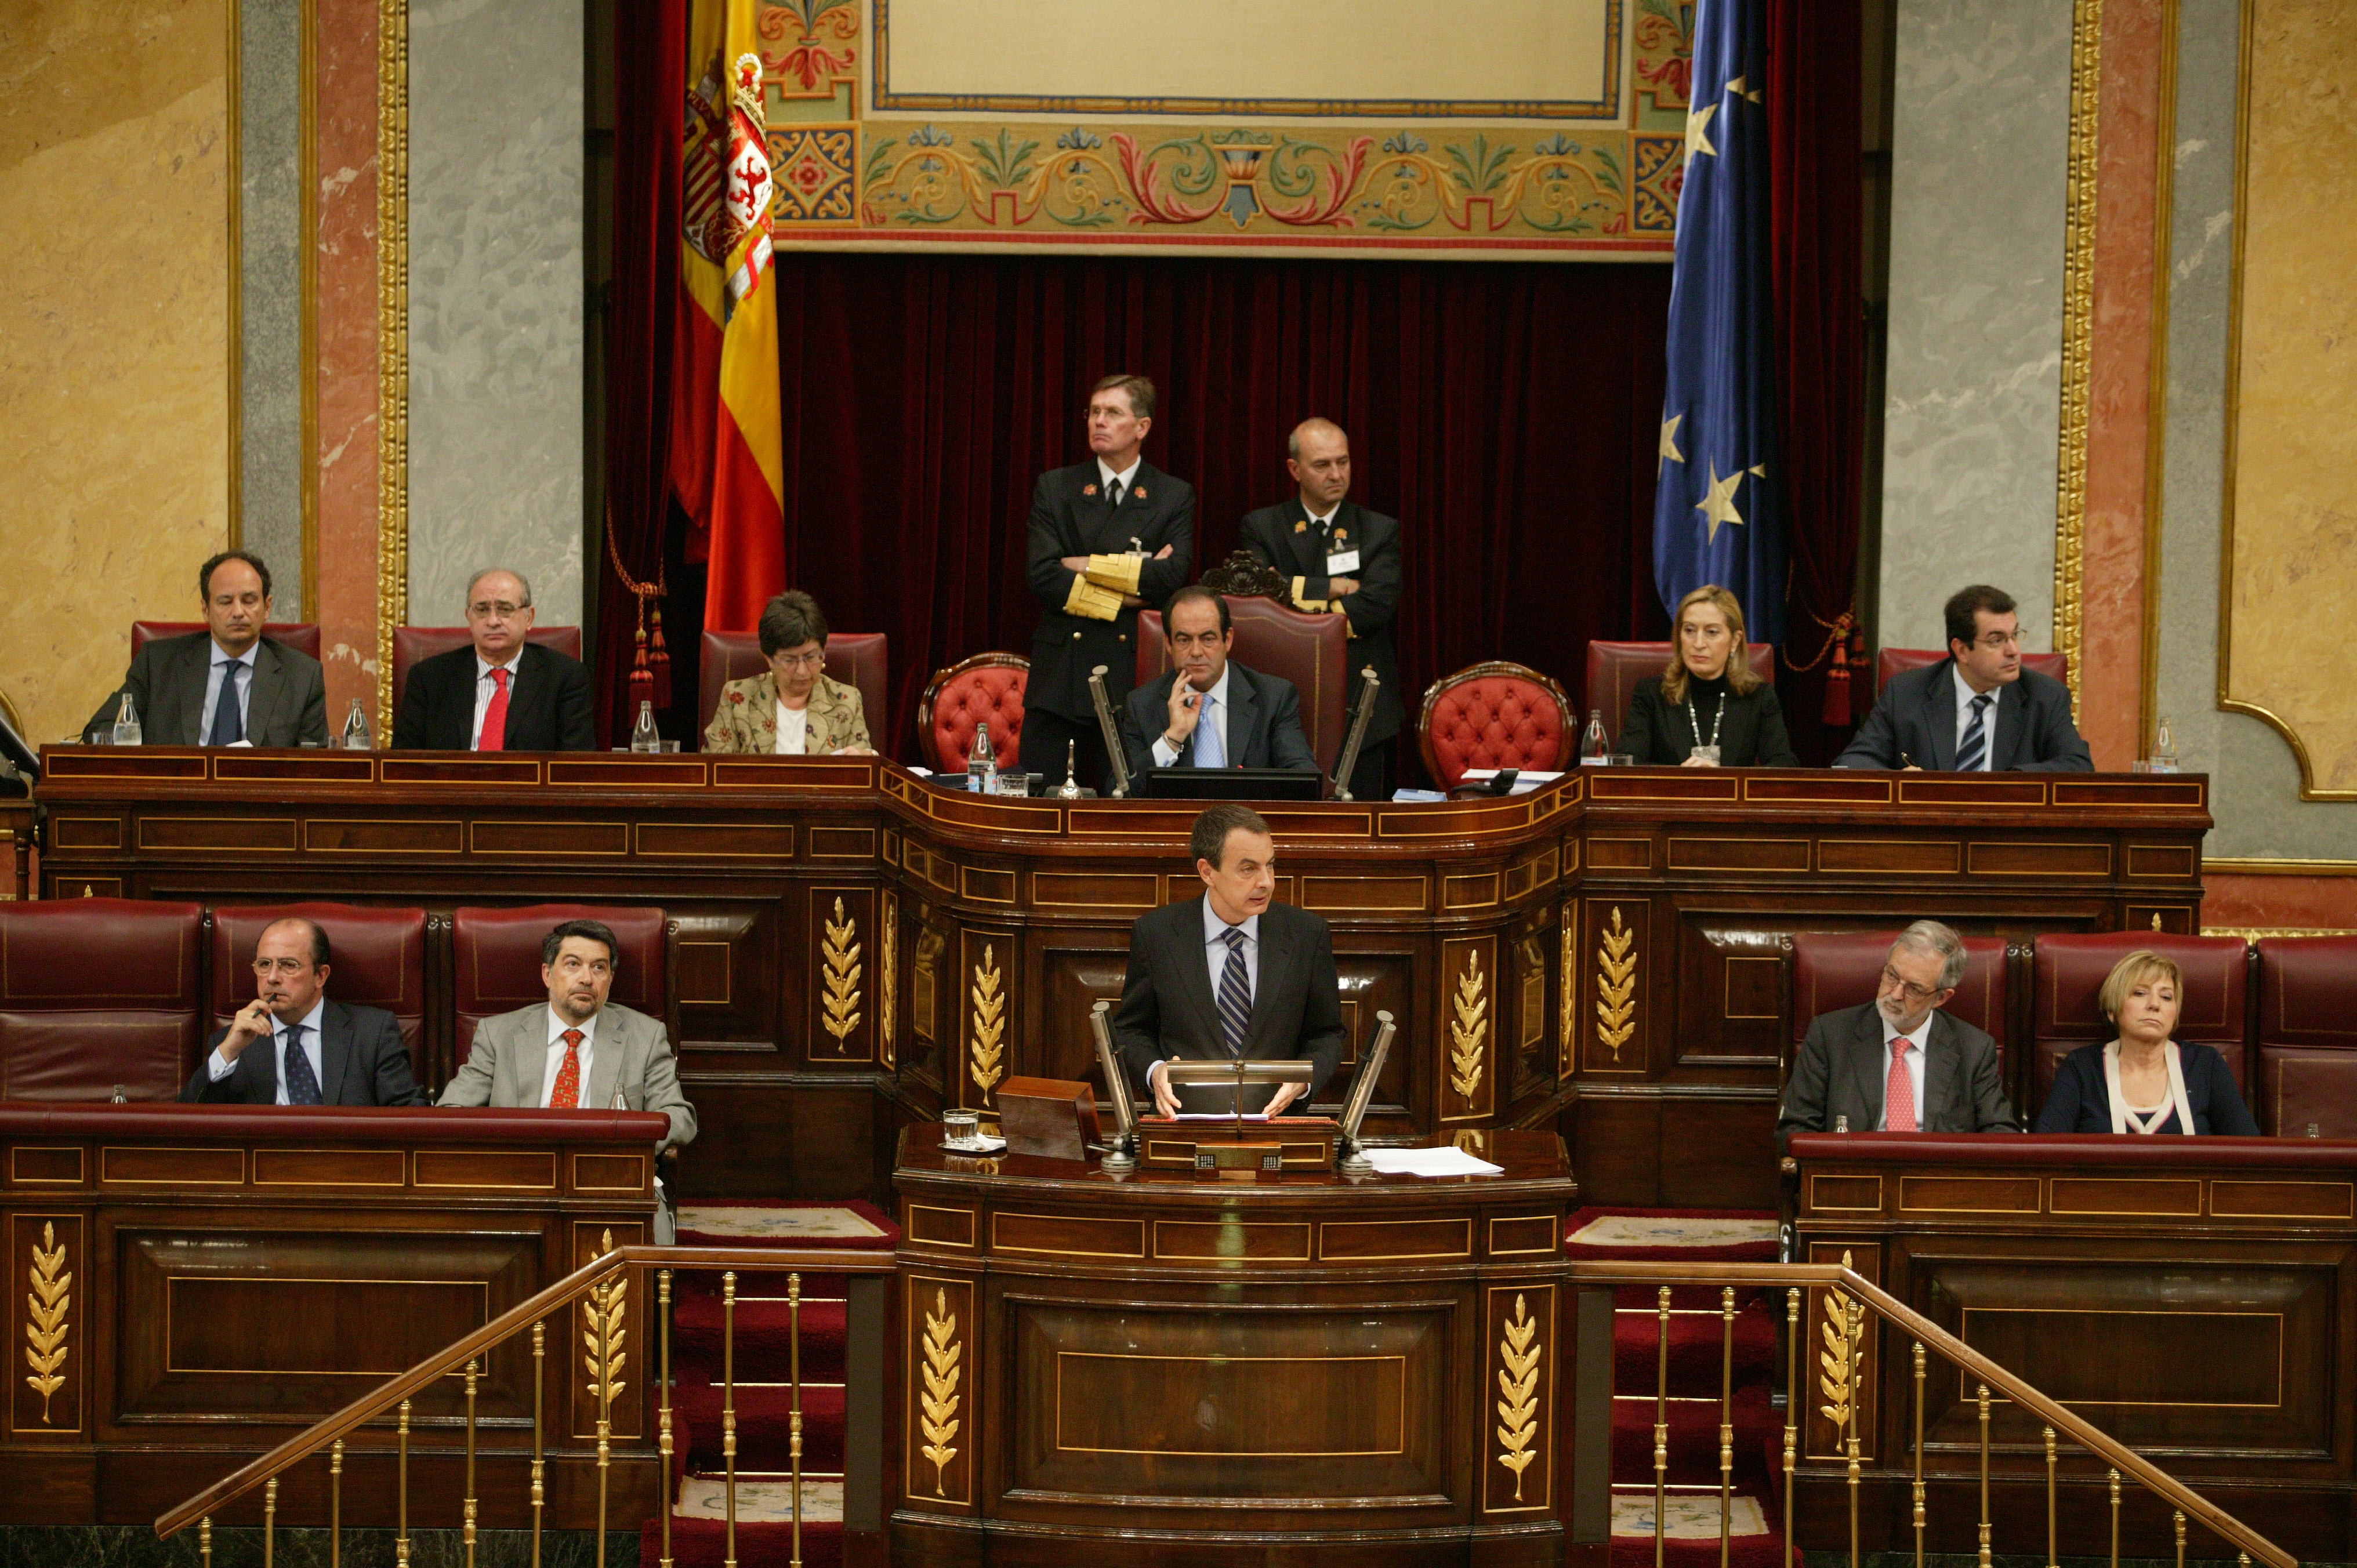 Discurso de José Luis Rodríguez Zapatero, candidato a la Presidencia del Gobierno, del Grupo Parlamentario Socialista, en la Tribuna de Oradores